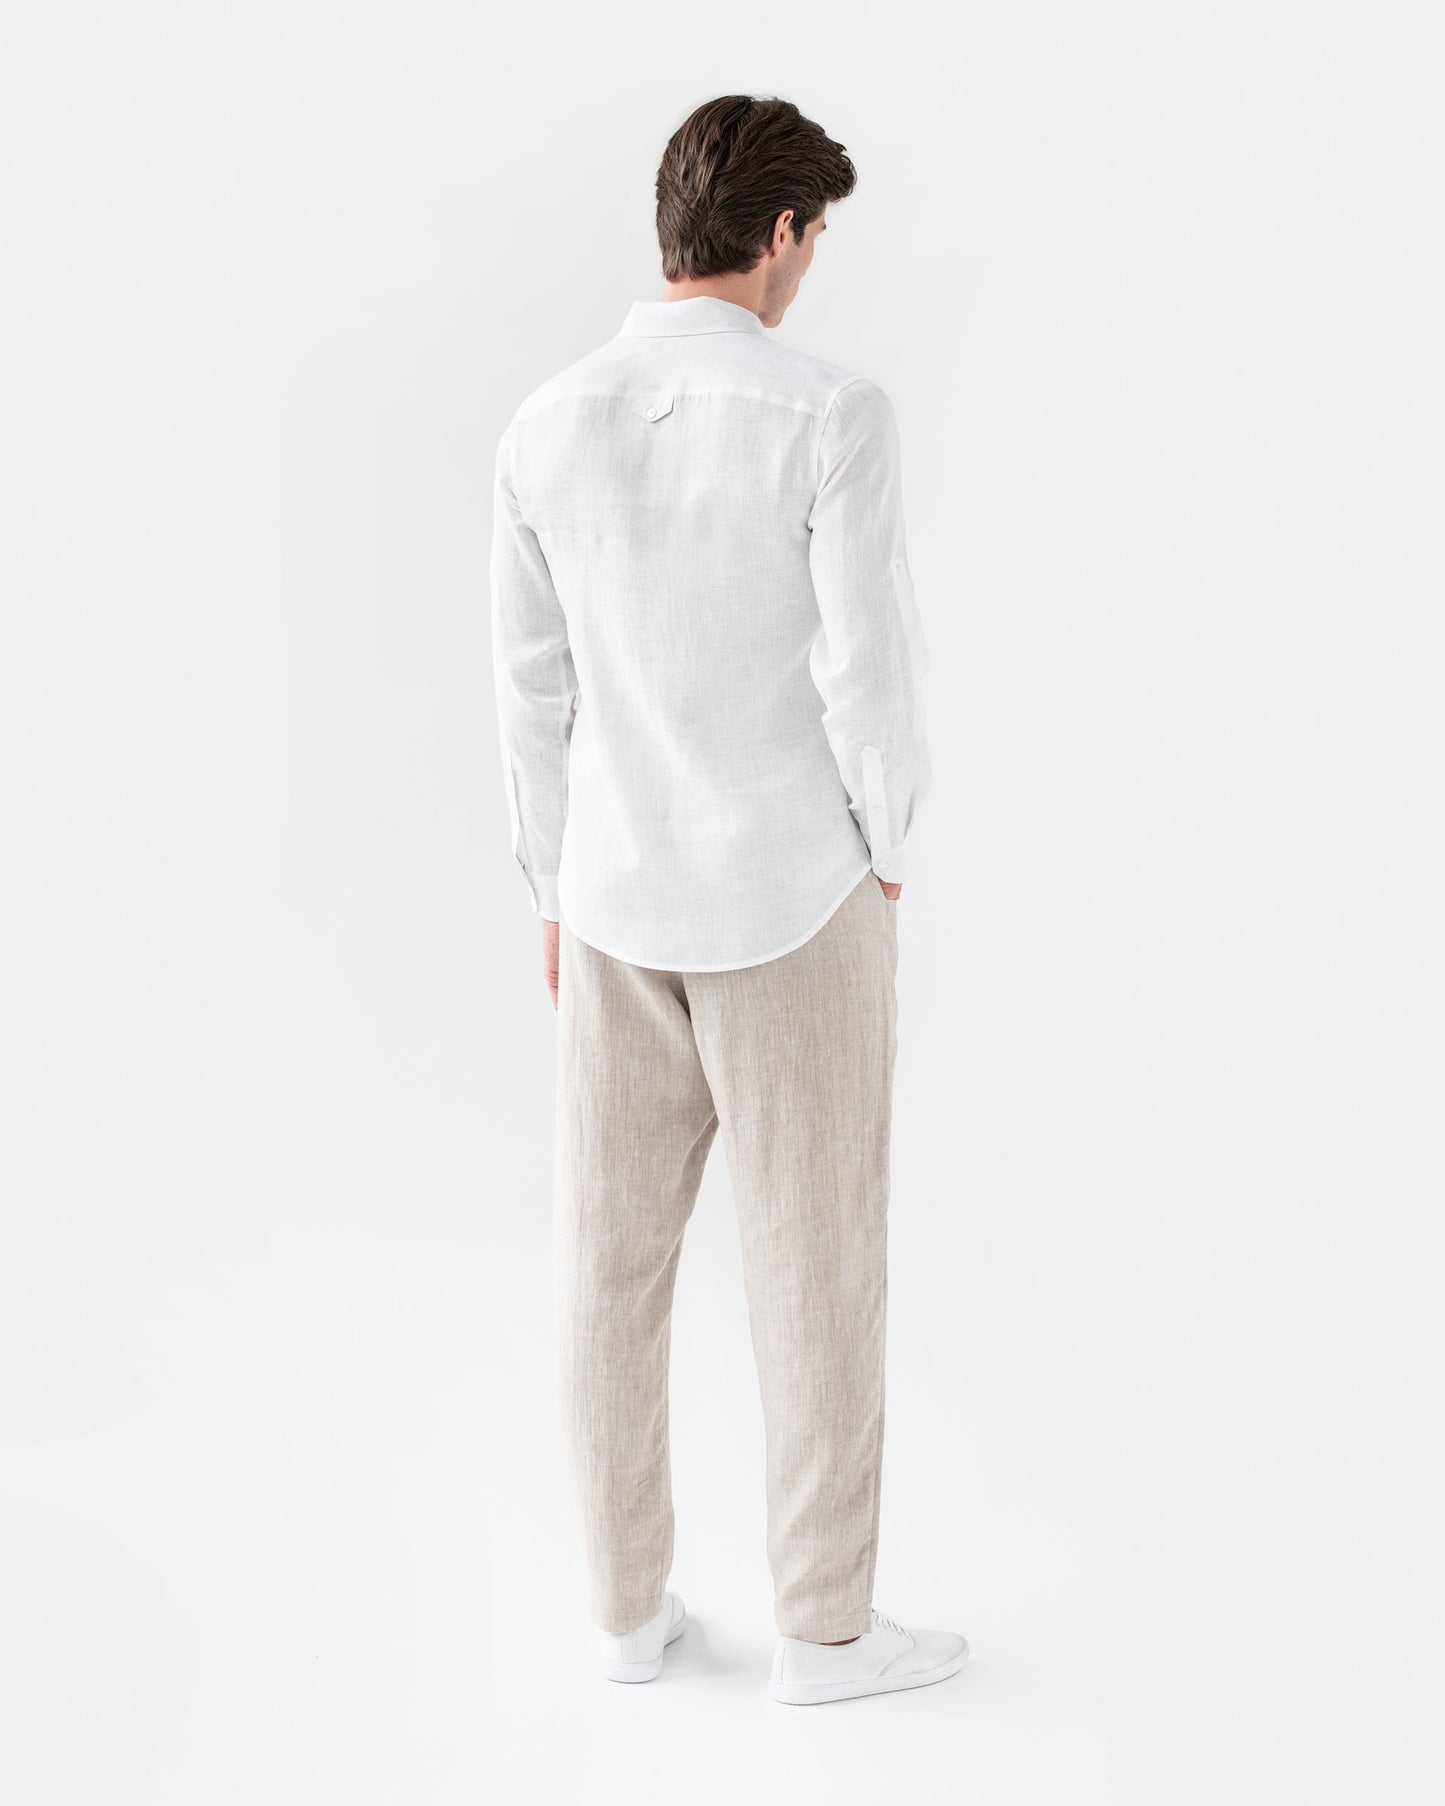 Men's linen shirt CORONADO in white - MagicLinen